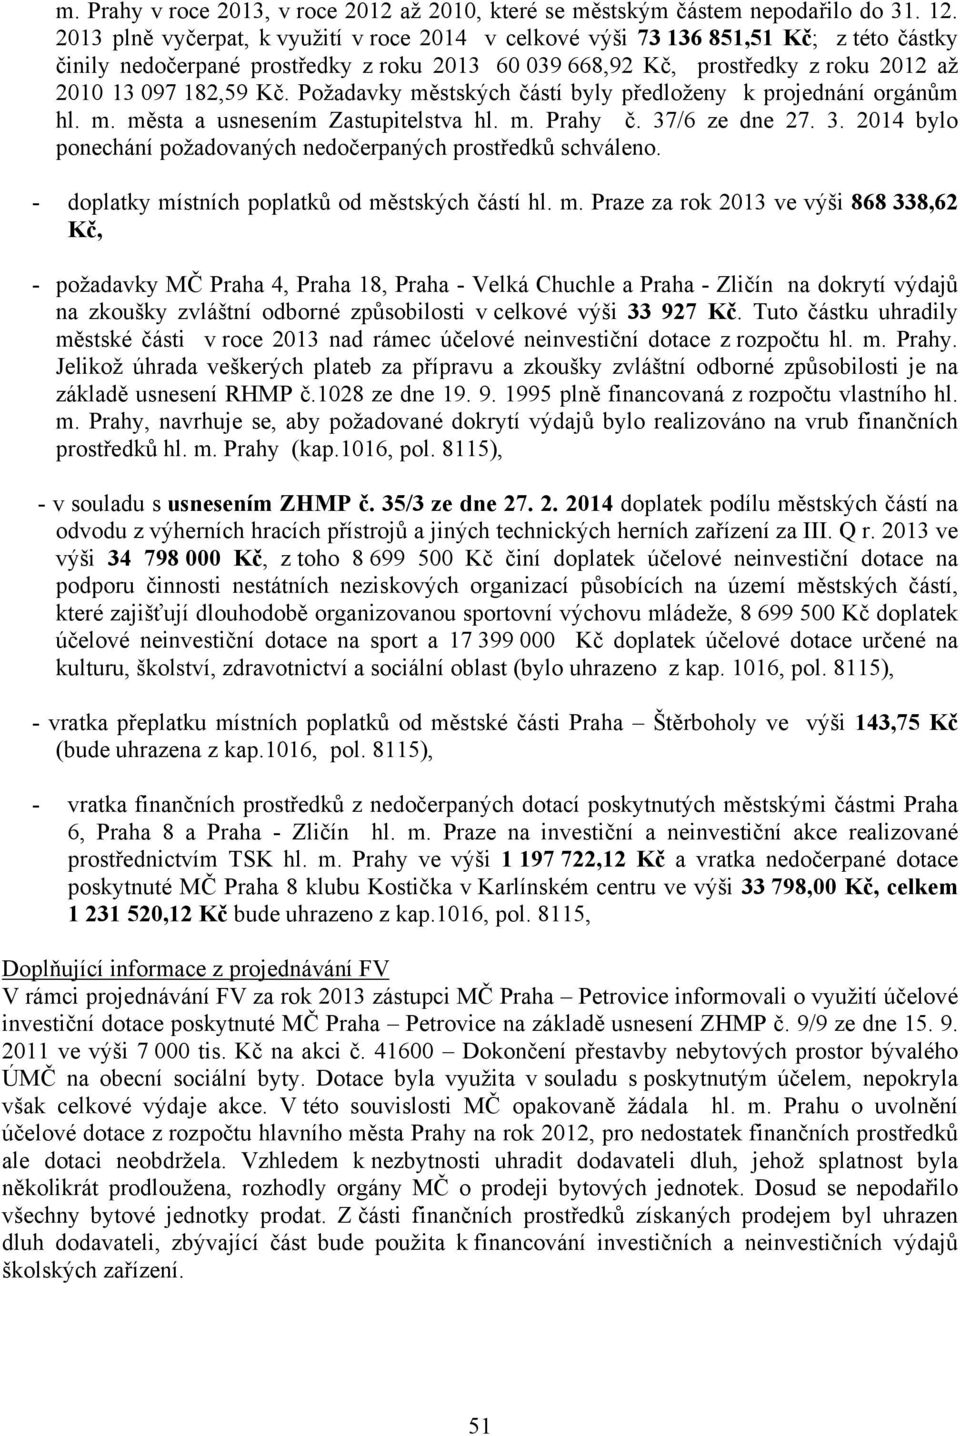 Požadavky městských částí byly předloženy k projednání orgánům hl. m. města a usnesením Zastupitelstva hl. m. Prahy č. 37/6 ze dne 27. 3. 2014 bylo ponechání požadovaných nedočerpaných prostředků schváleno.